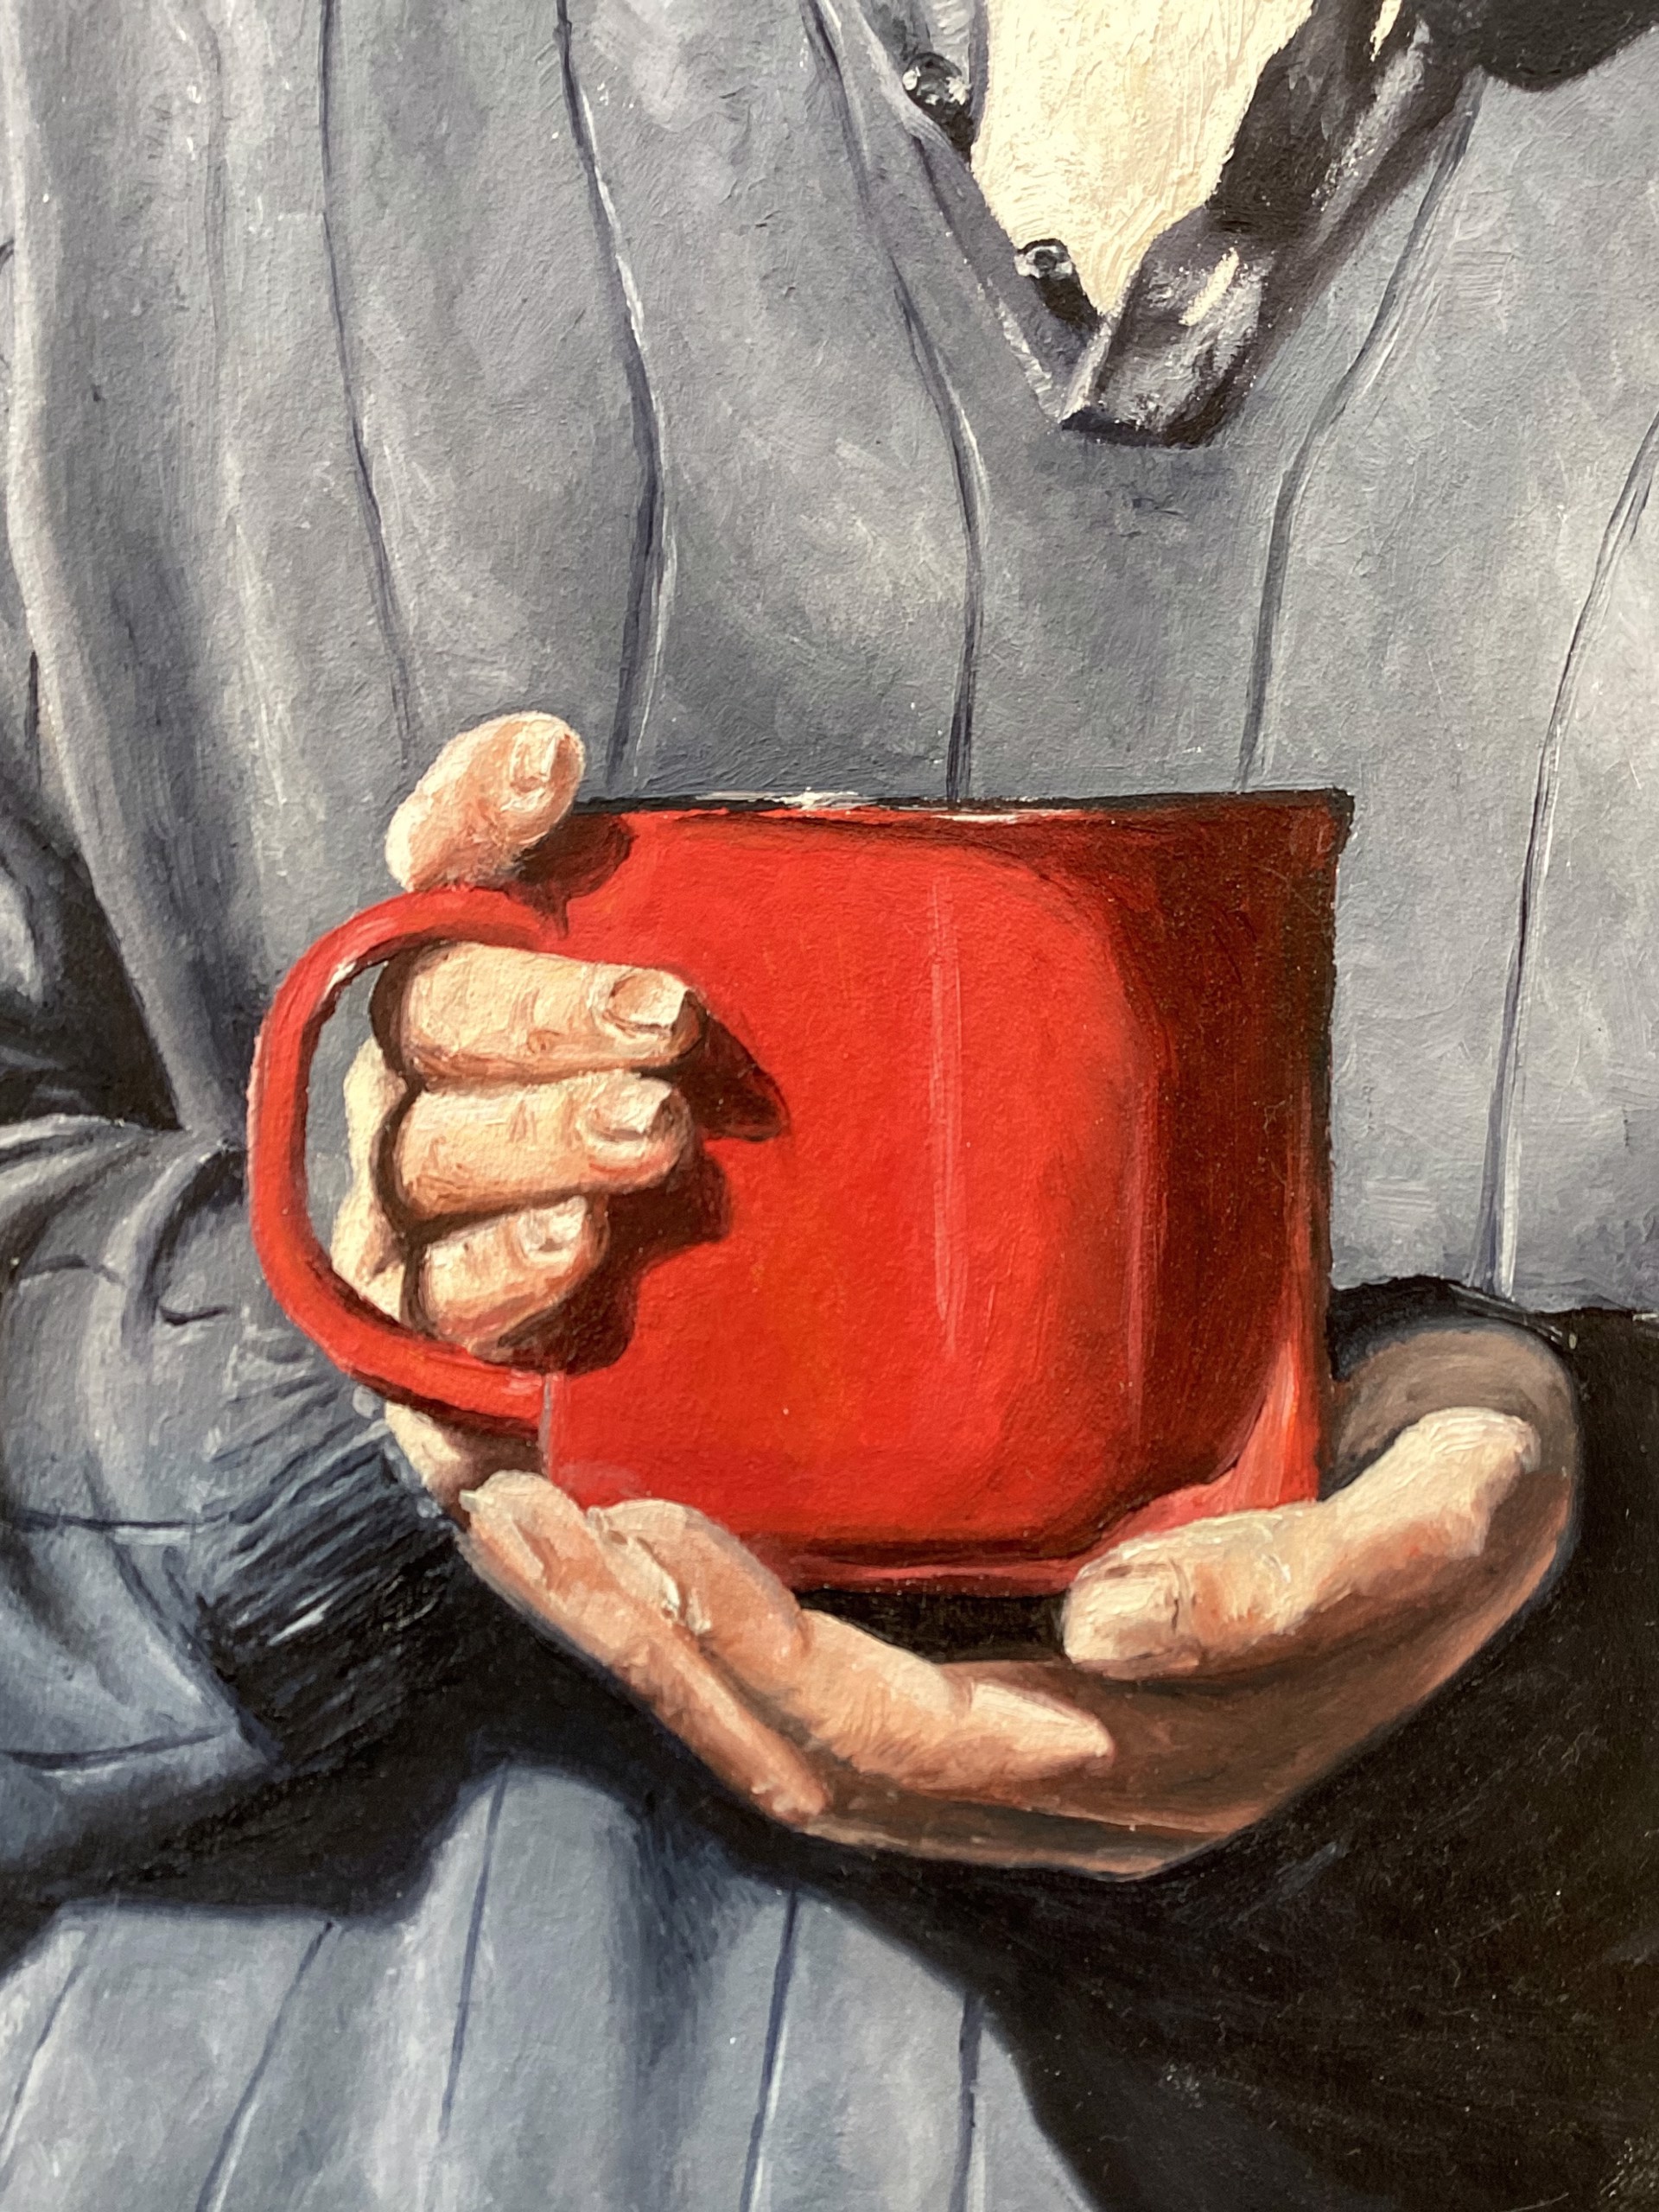 Morning Coffee by Greer Wilkins